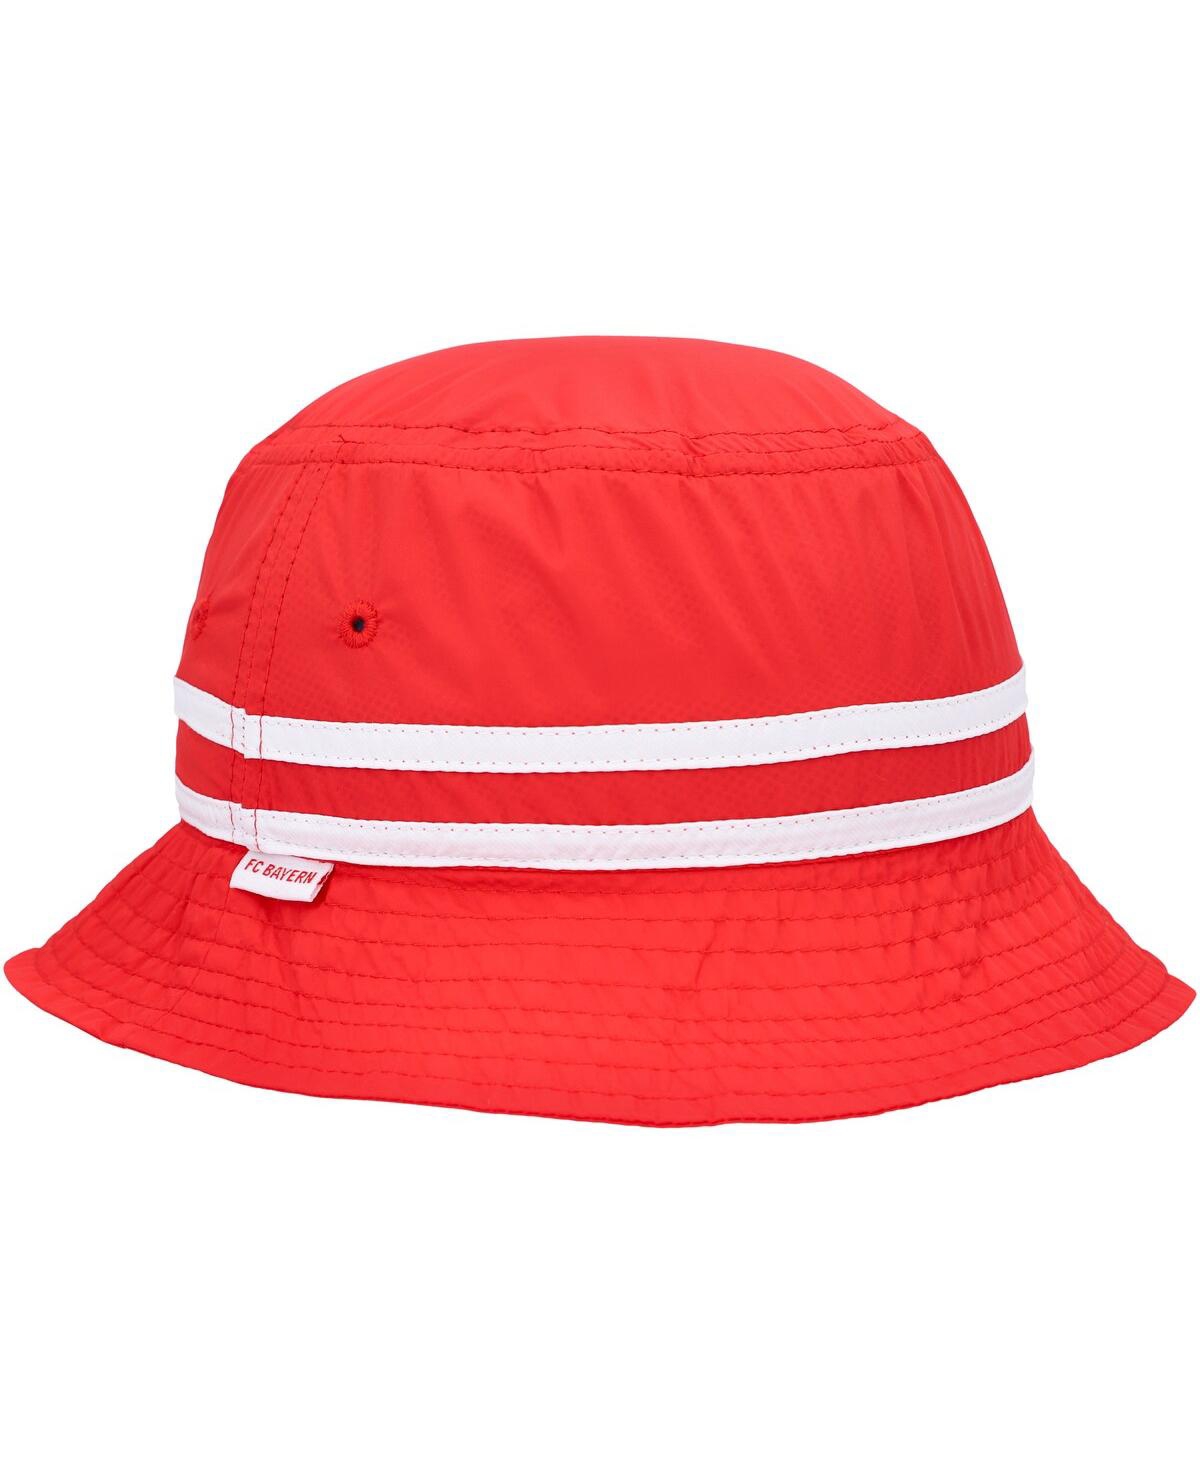 Men's Red Bayern Munich Oasis Bucket Hat - Red